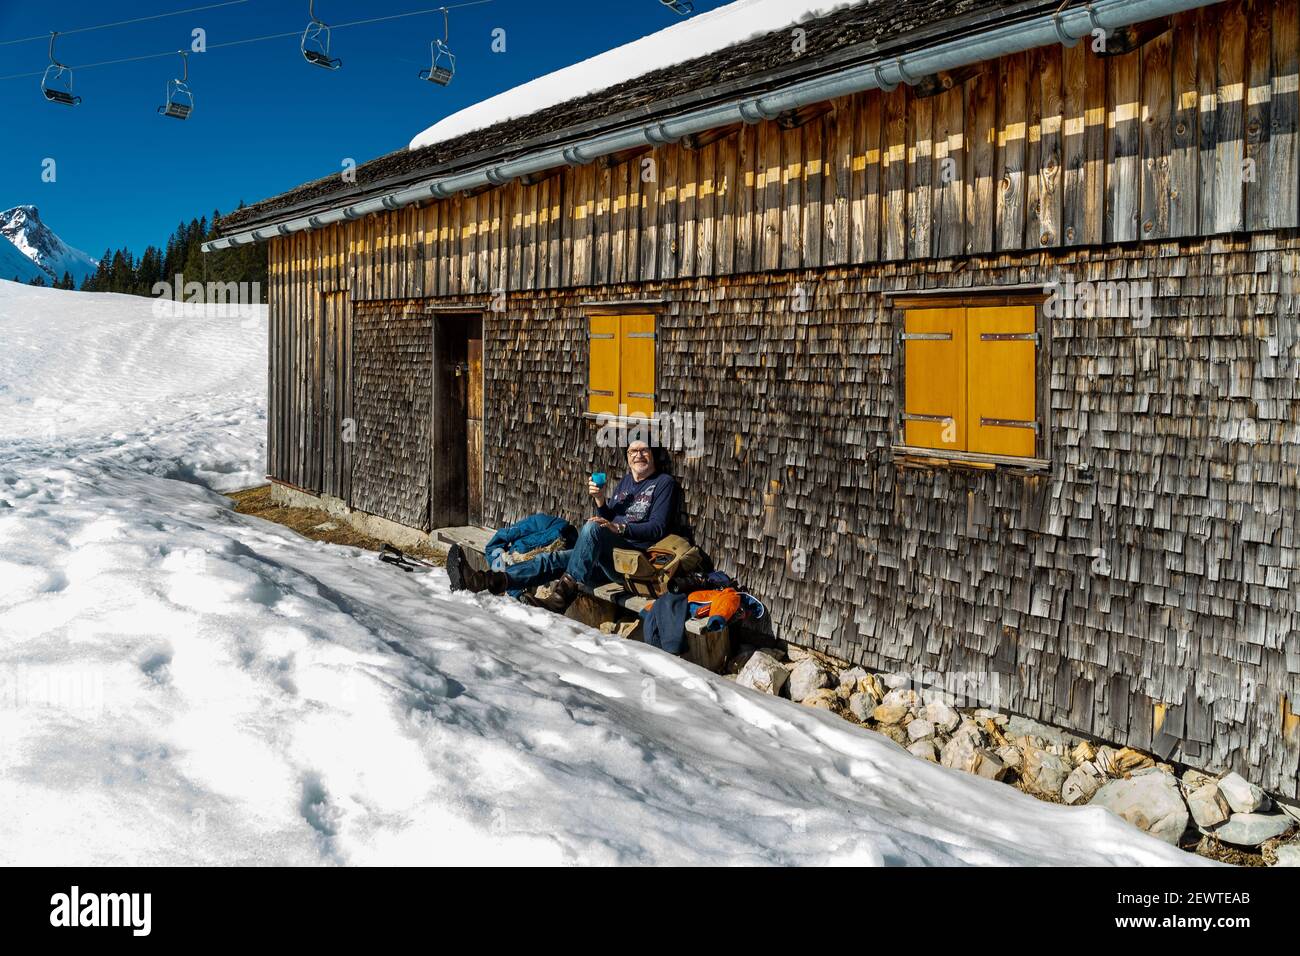 Pause auf der Bank an einer geschindelten Alphütte. Break on the bench at a shingled alpine hut. Wintersport in Austria's snow-covered alps. snowshoe Stock Photo